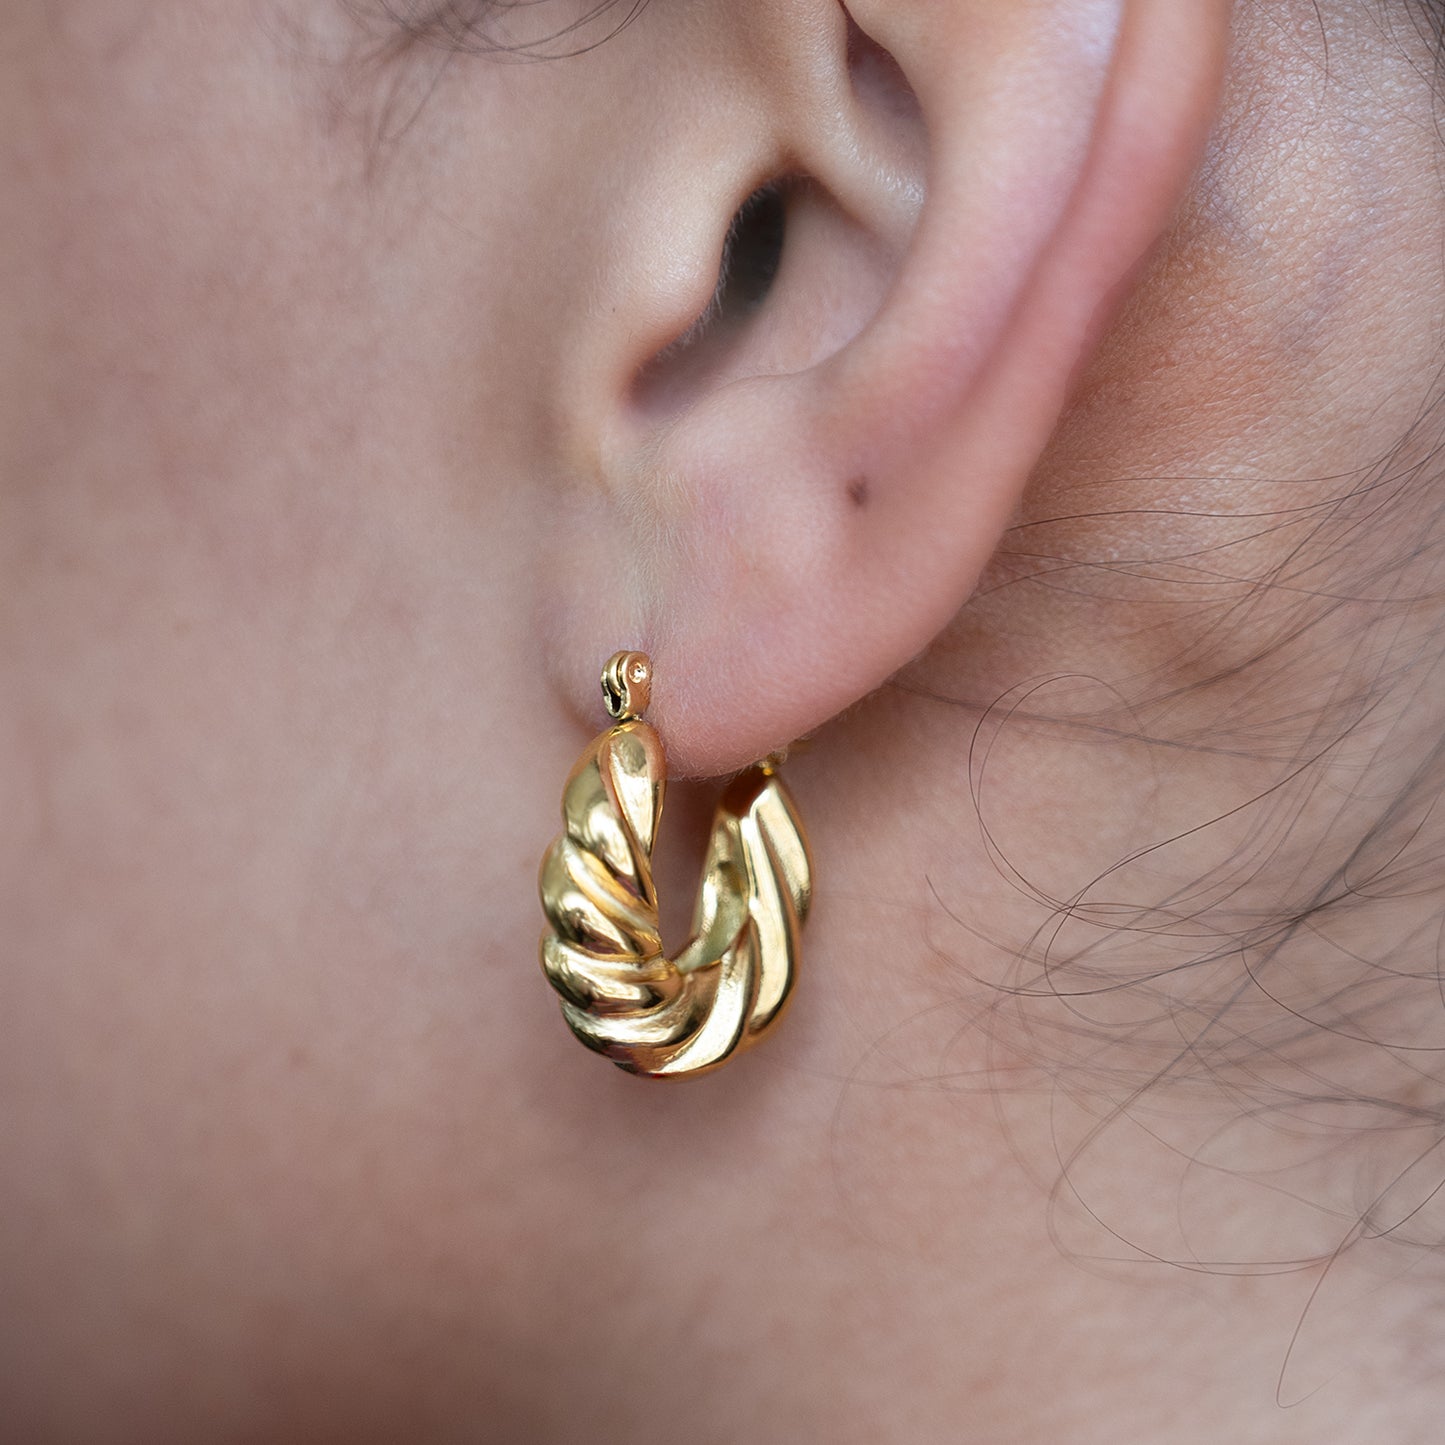 Twisted Croissant Hoop Earrings shown worn in a model's ear